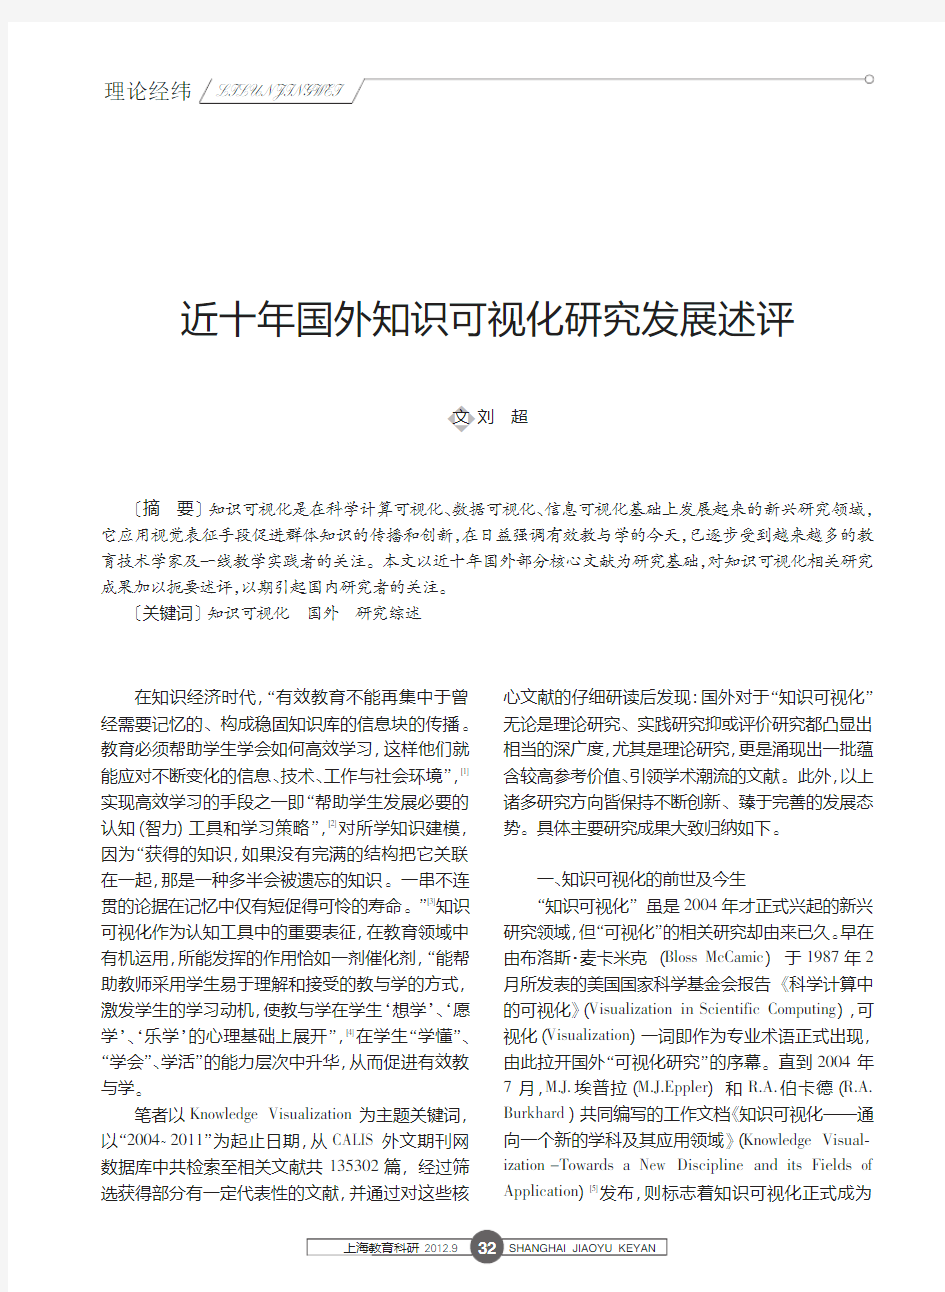 近十年国外知识可视化研究发展述评_刘超 (1)